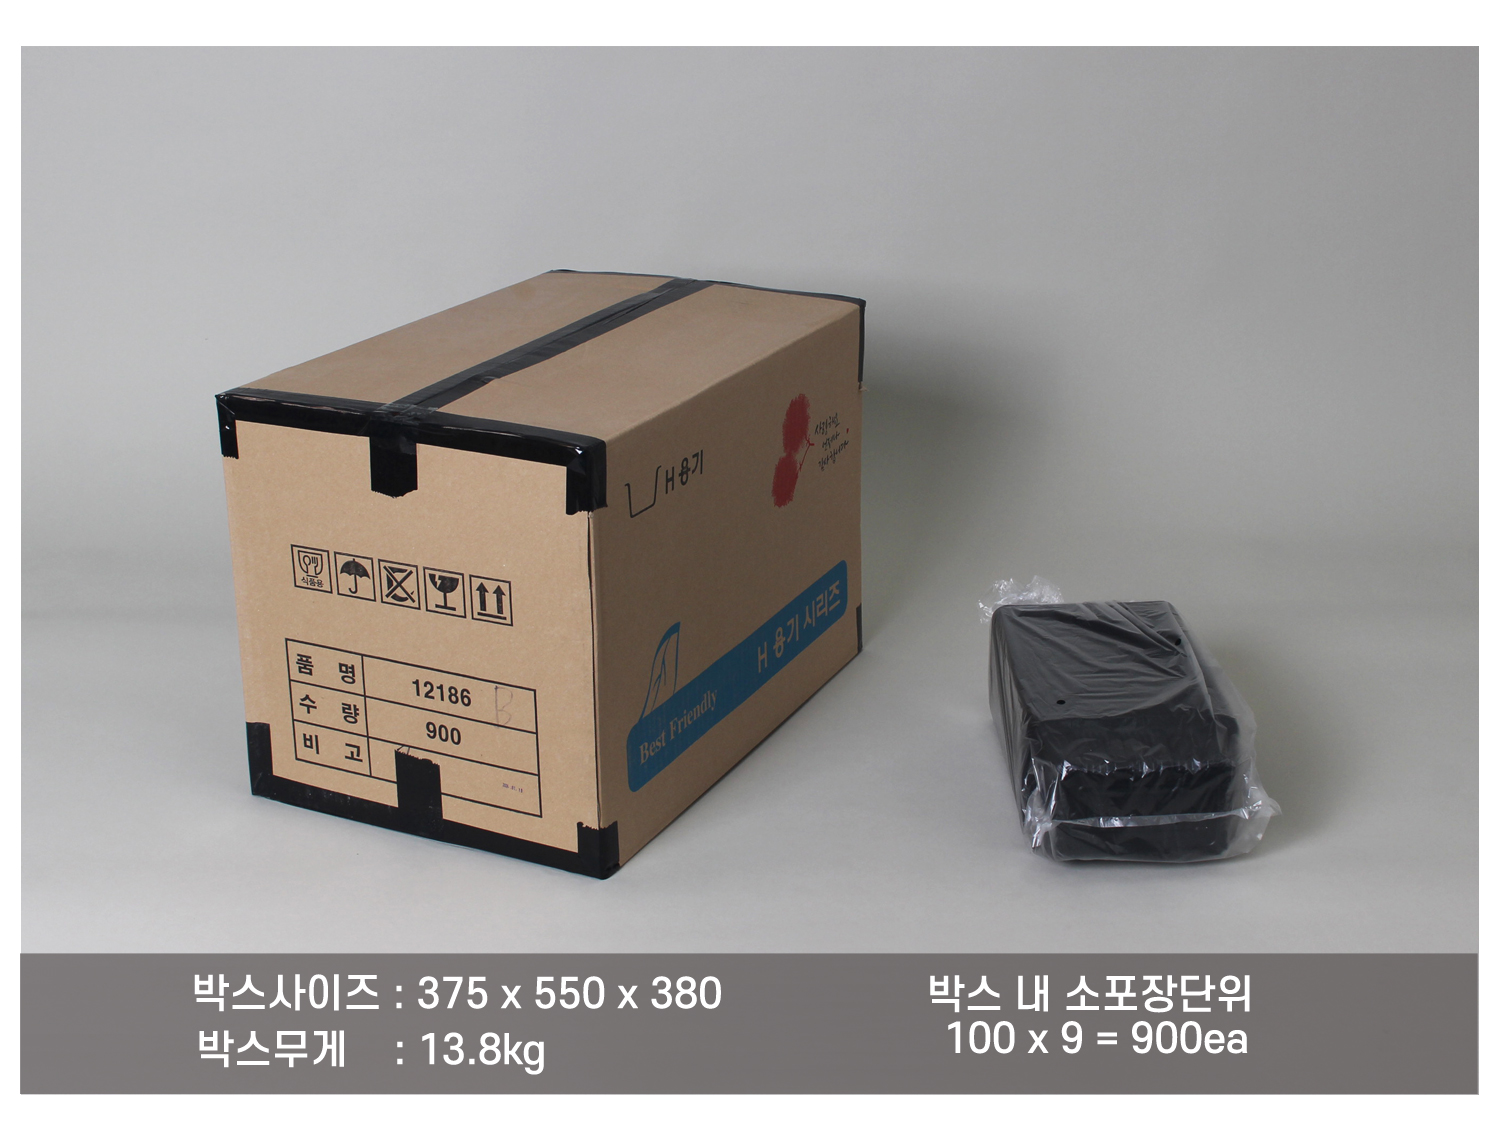 배송되는 박스와 소포장된 용기 이미지와 사이즈와 무게, 소포장단위등을 적어둔 배송안내